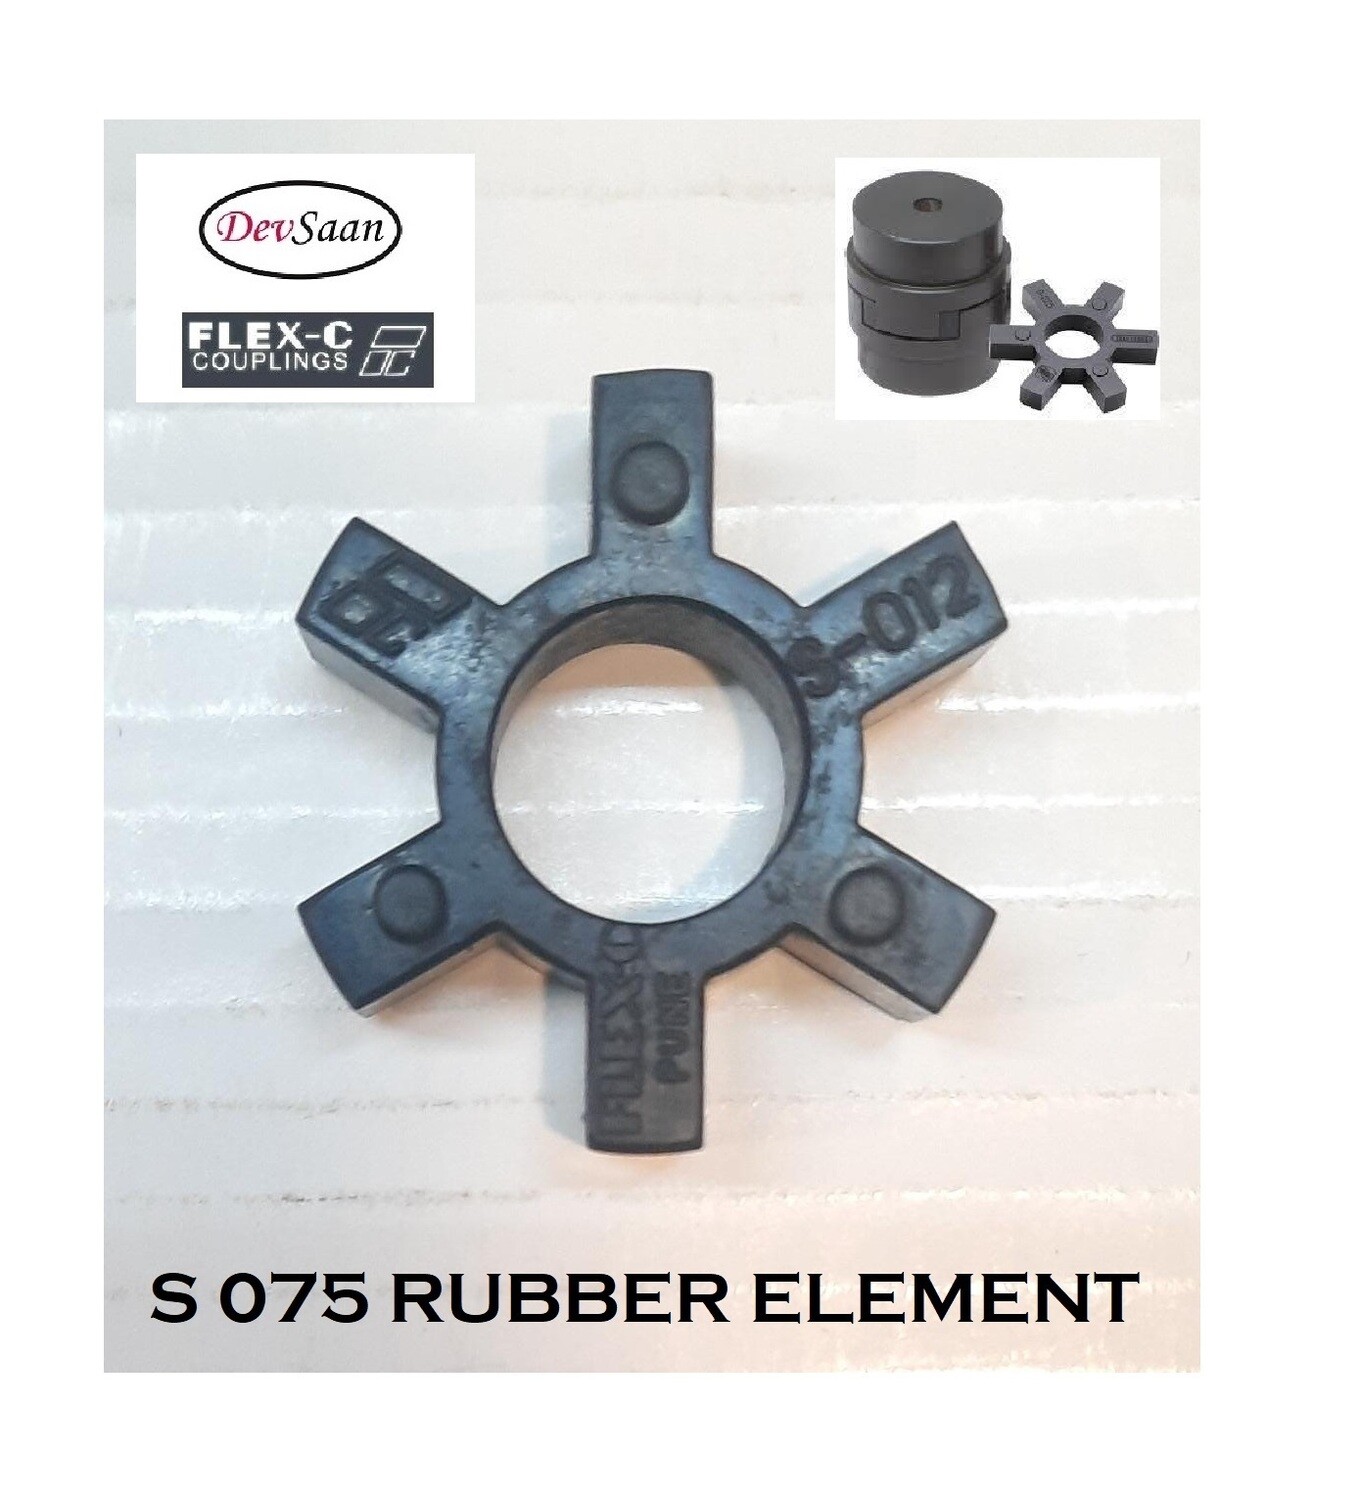 Coupling Rubber Element S 075 Flex-C